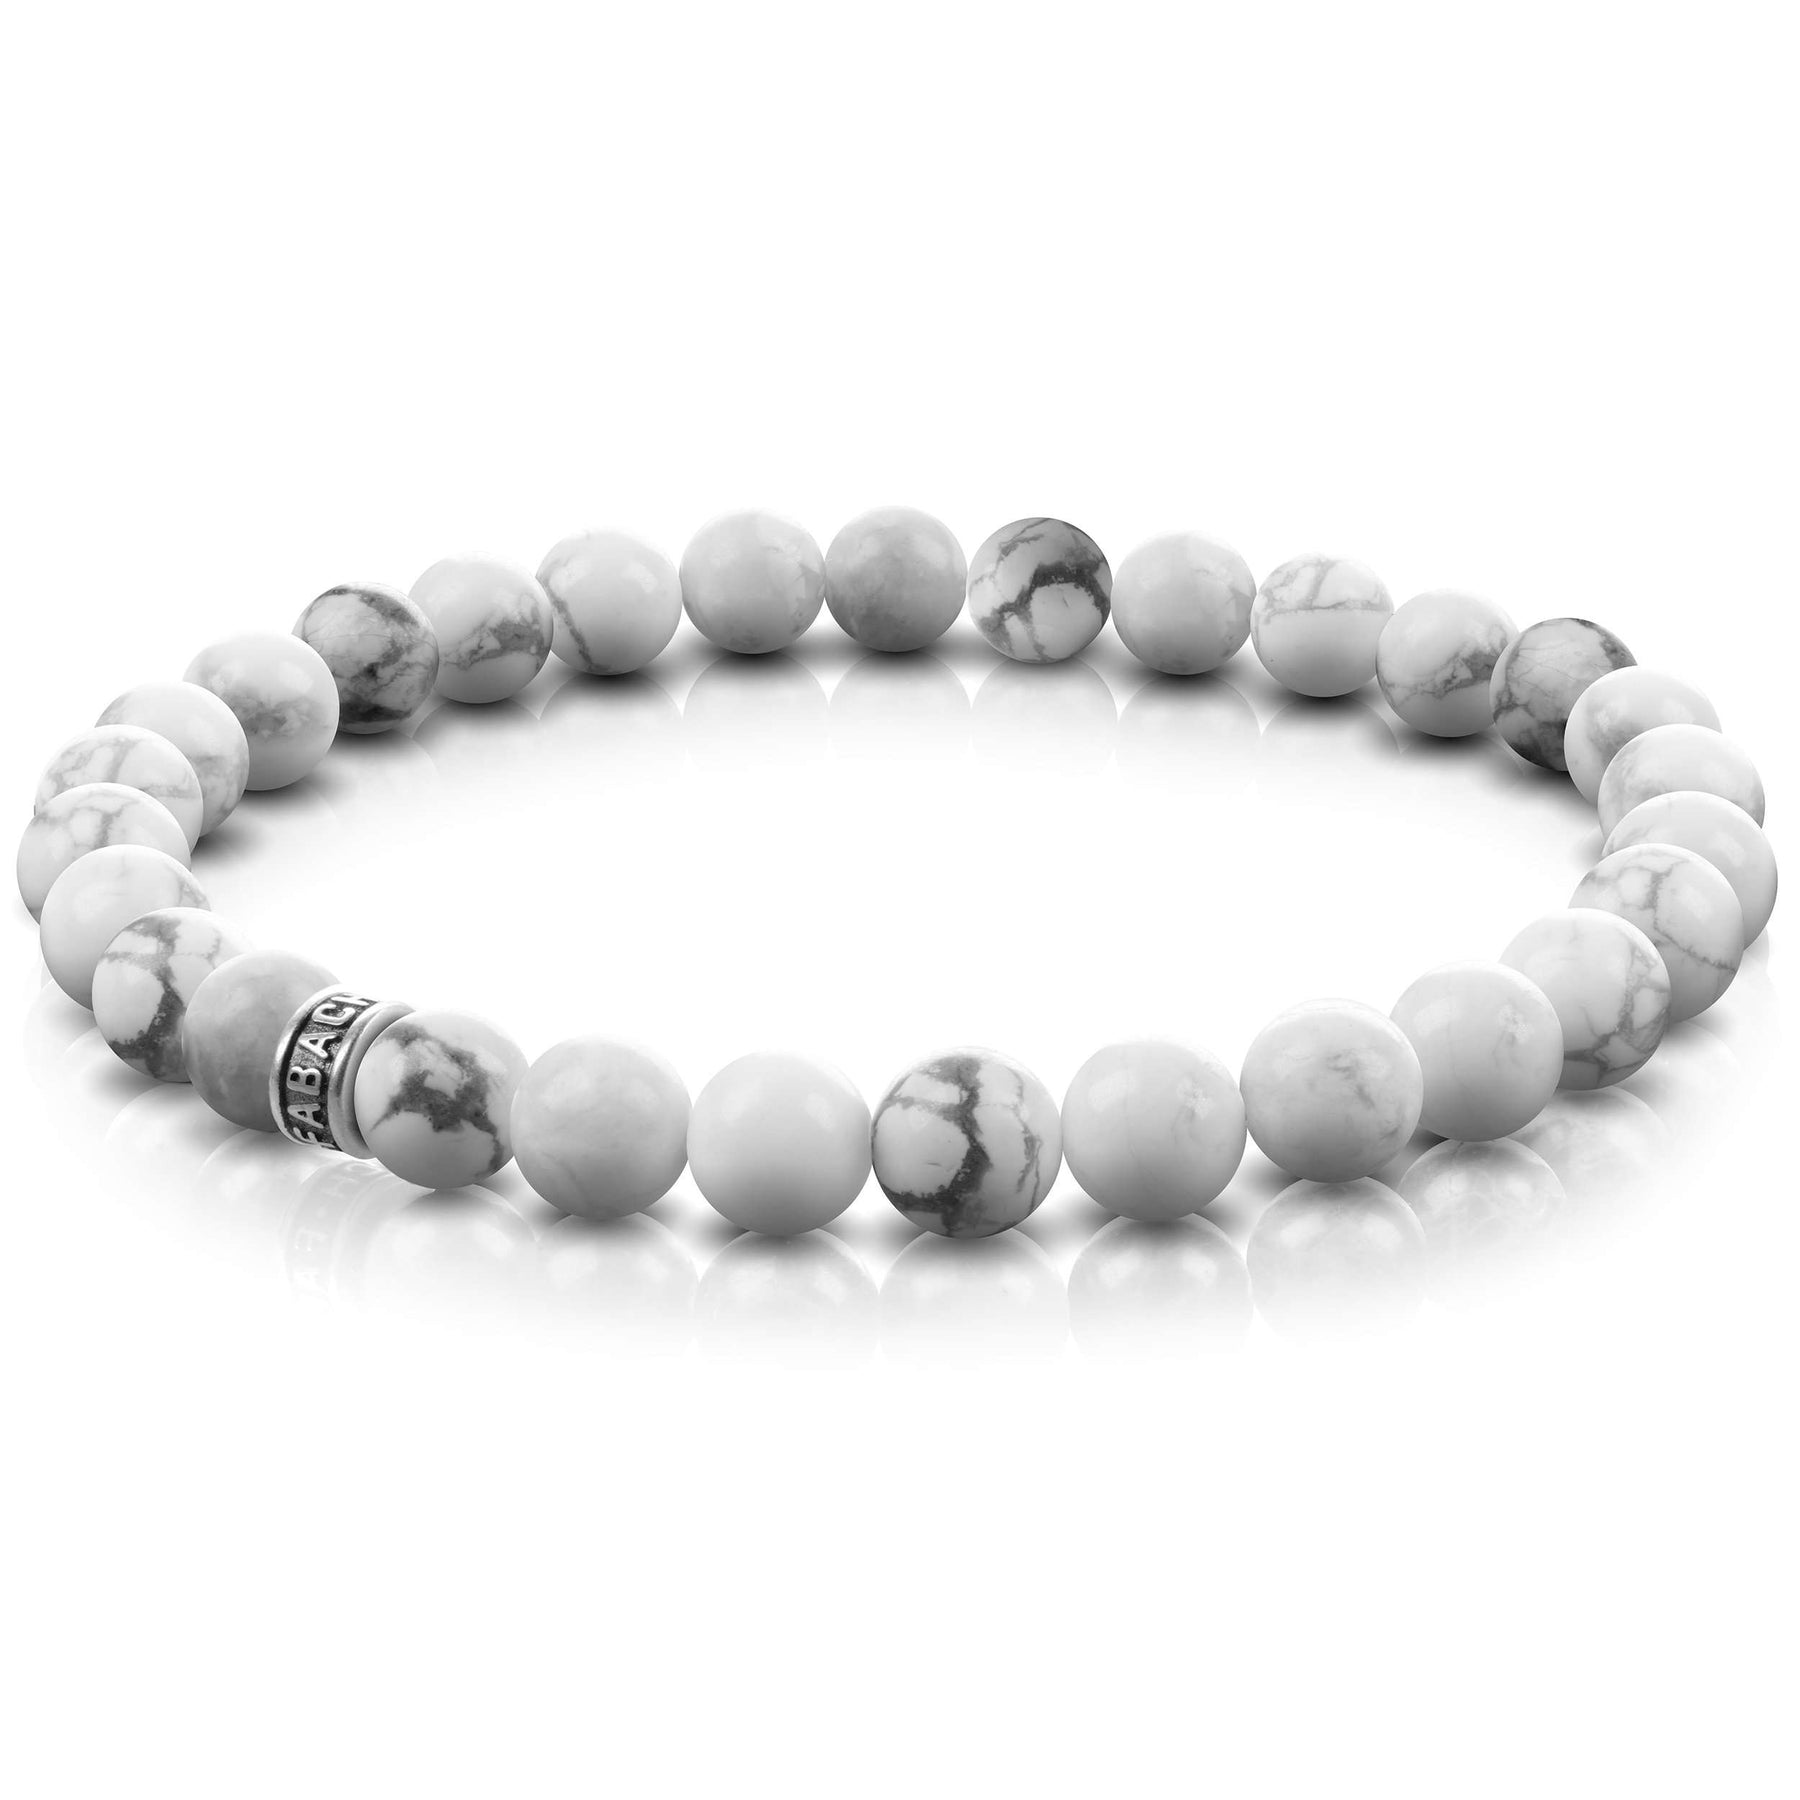 Perlenarmbänder mit 6mm Edelstein-Perlen und 925 Sterling Silber Logo-Perle